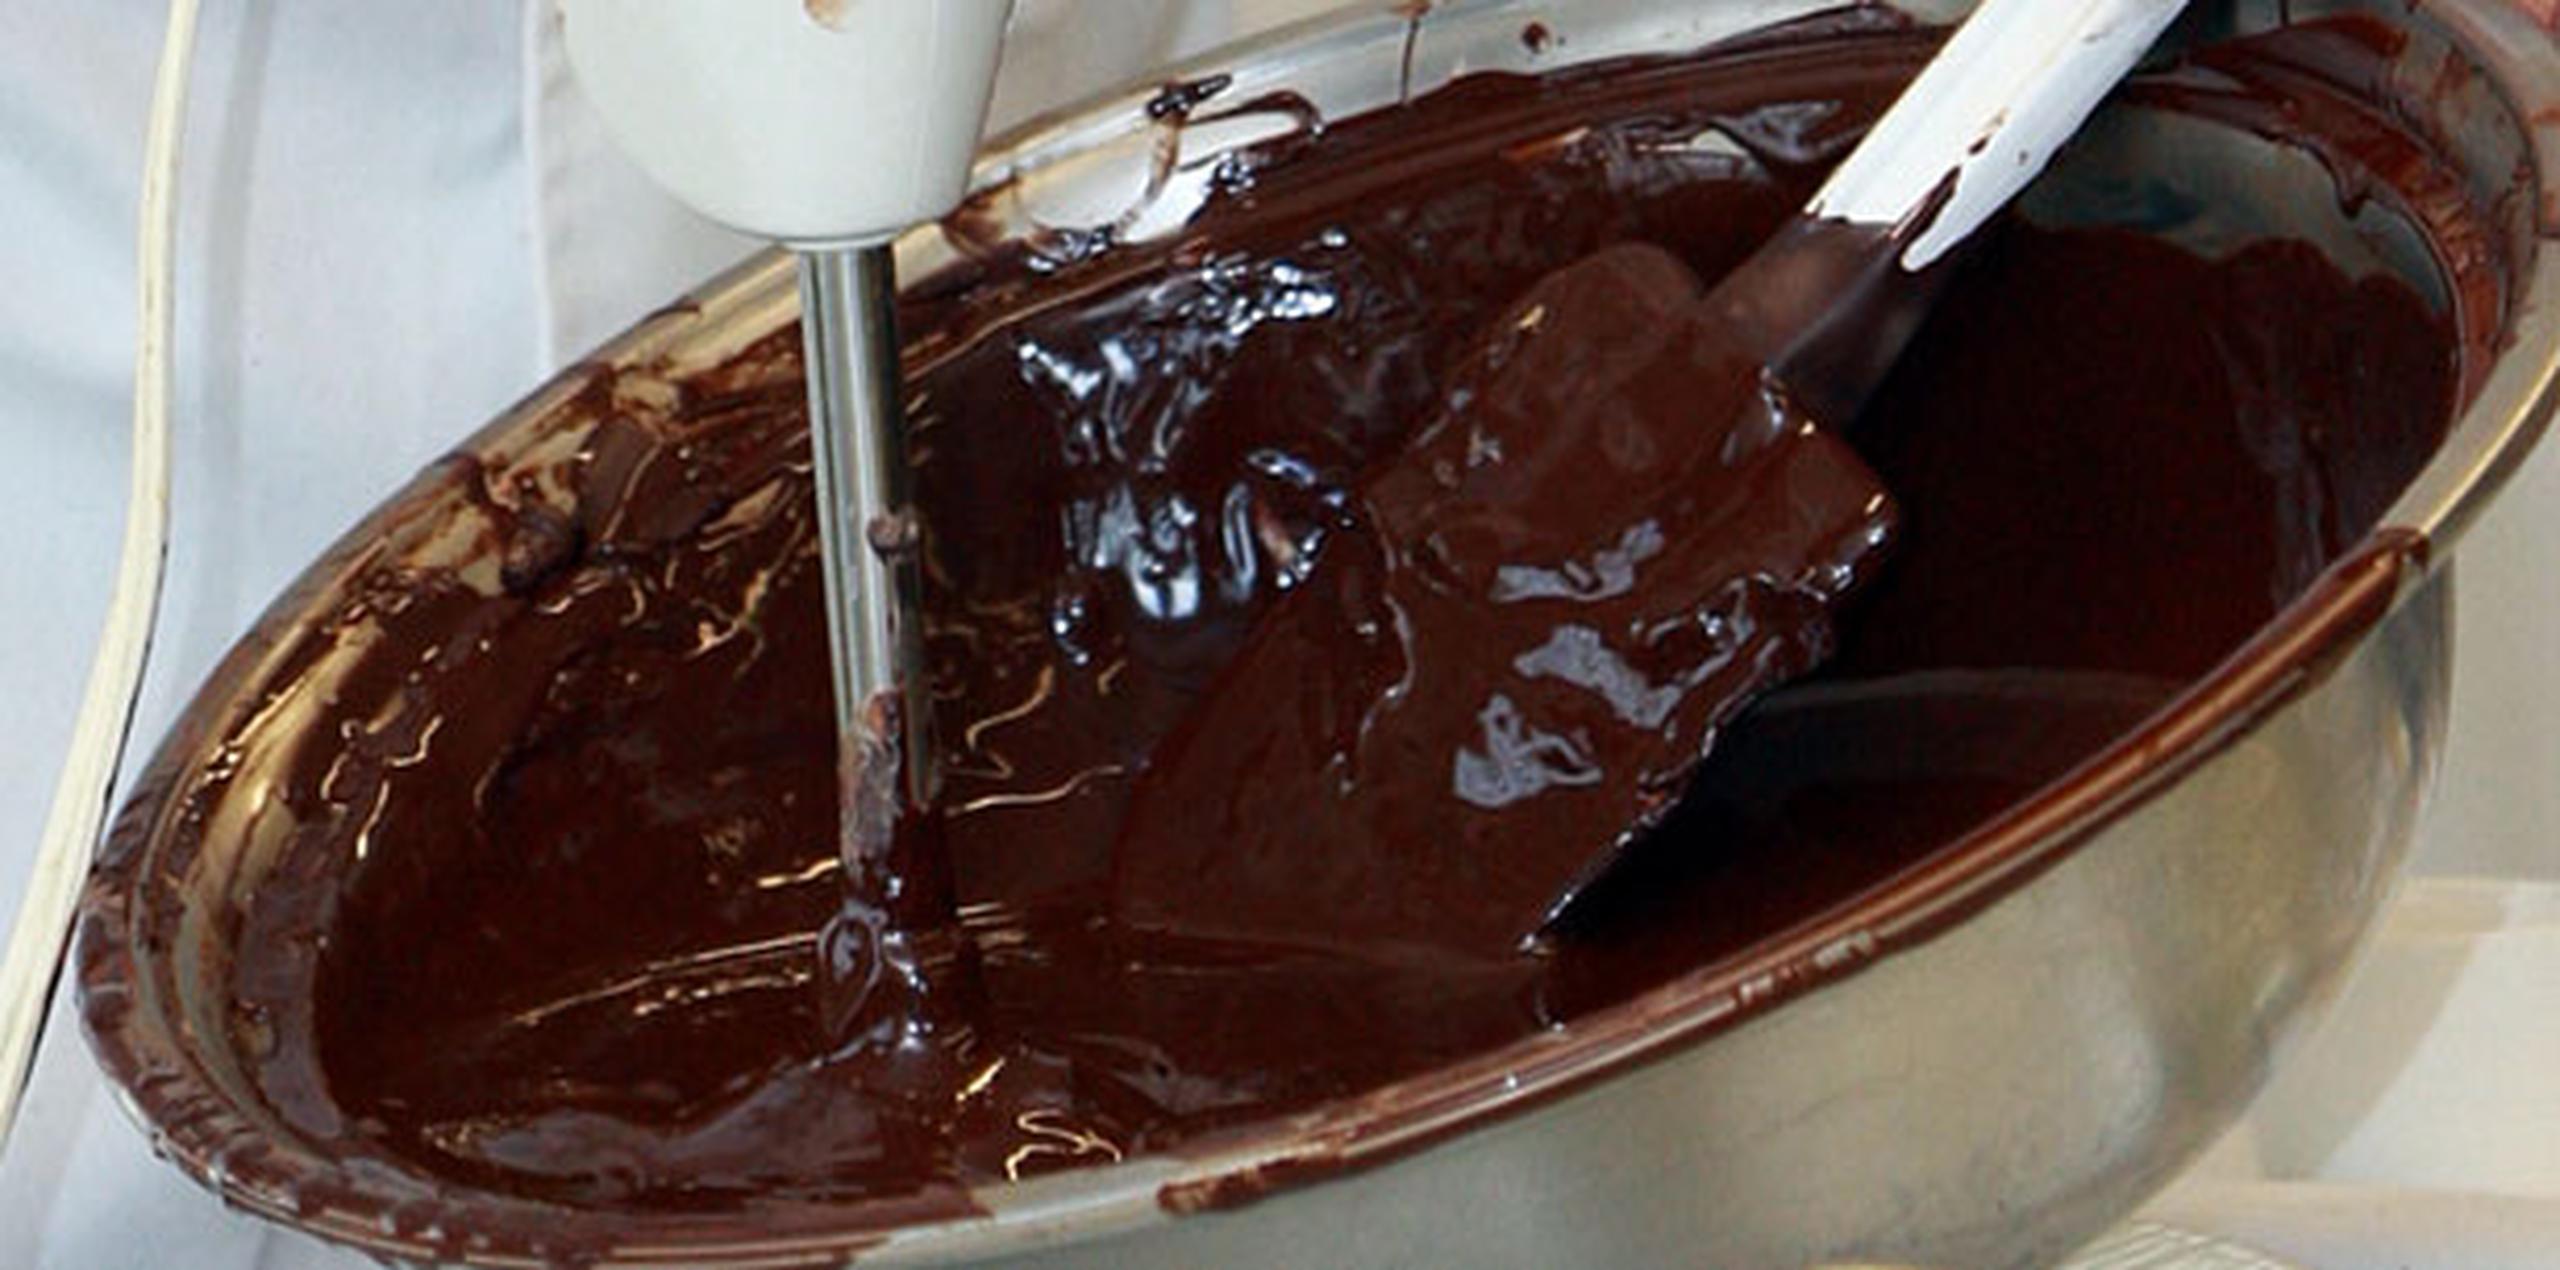 La recomendación de los especialistas es consumir diariamente no más de 30 gramos de chocolate -algo así como una caja de fósforos.(Archivo)